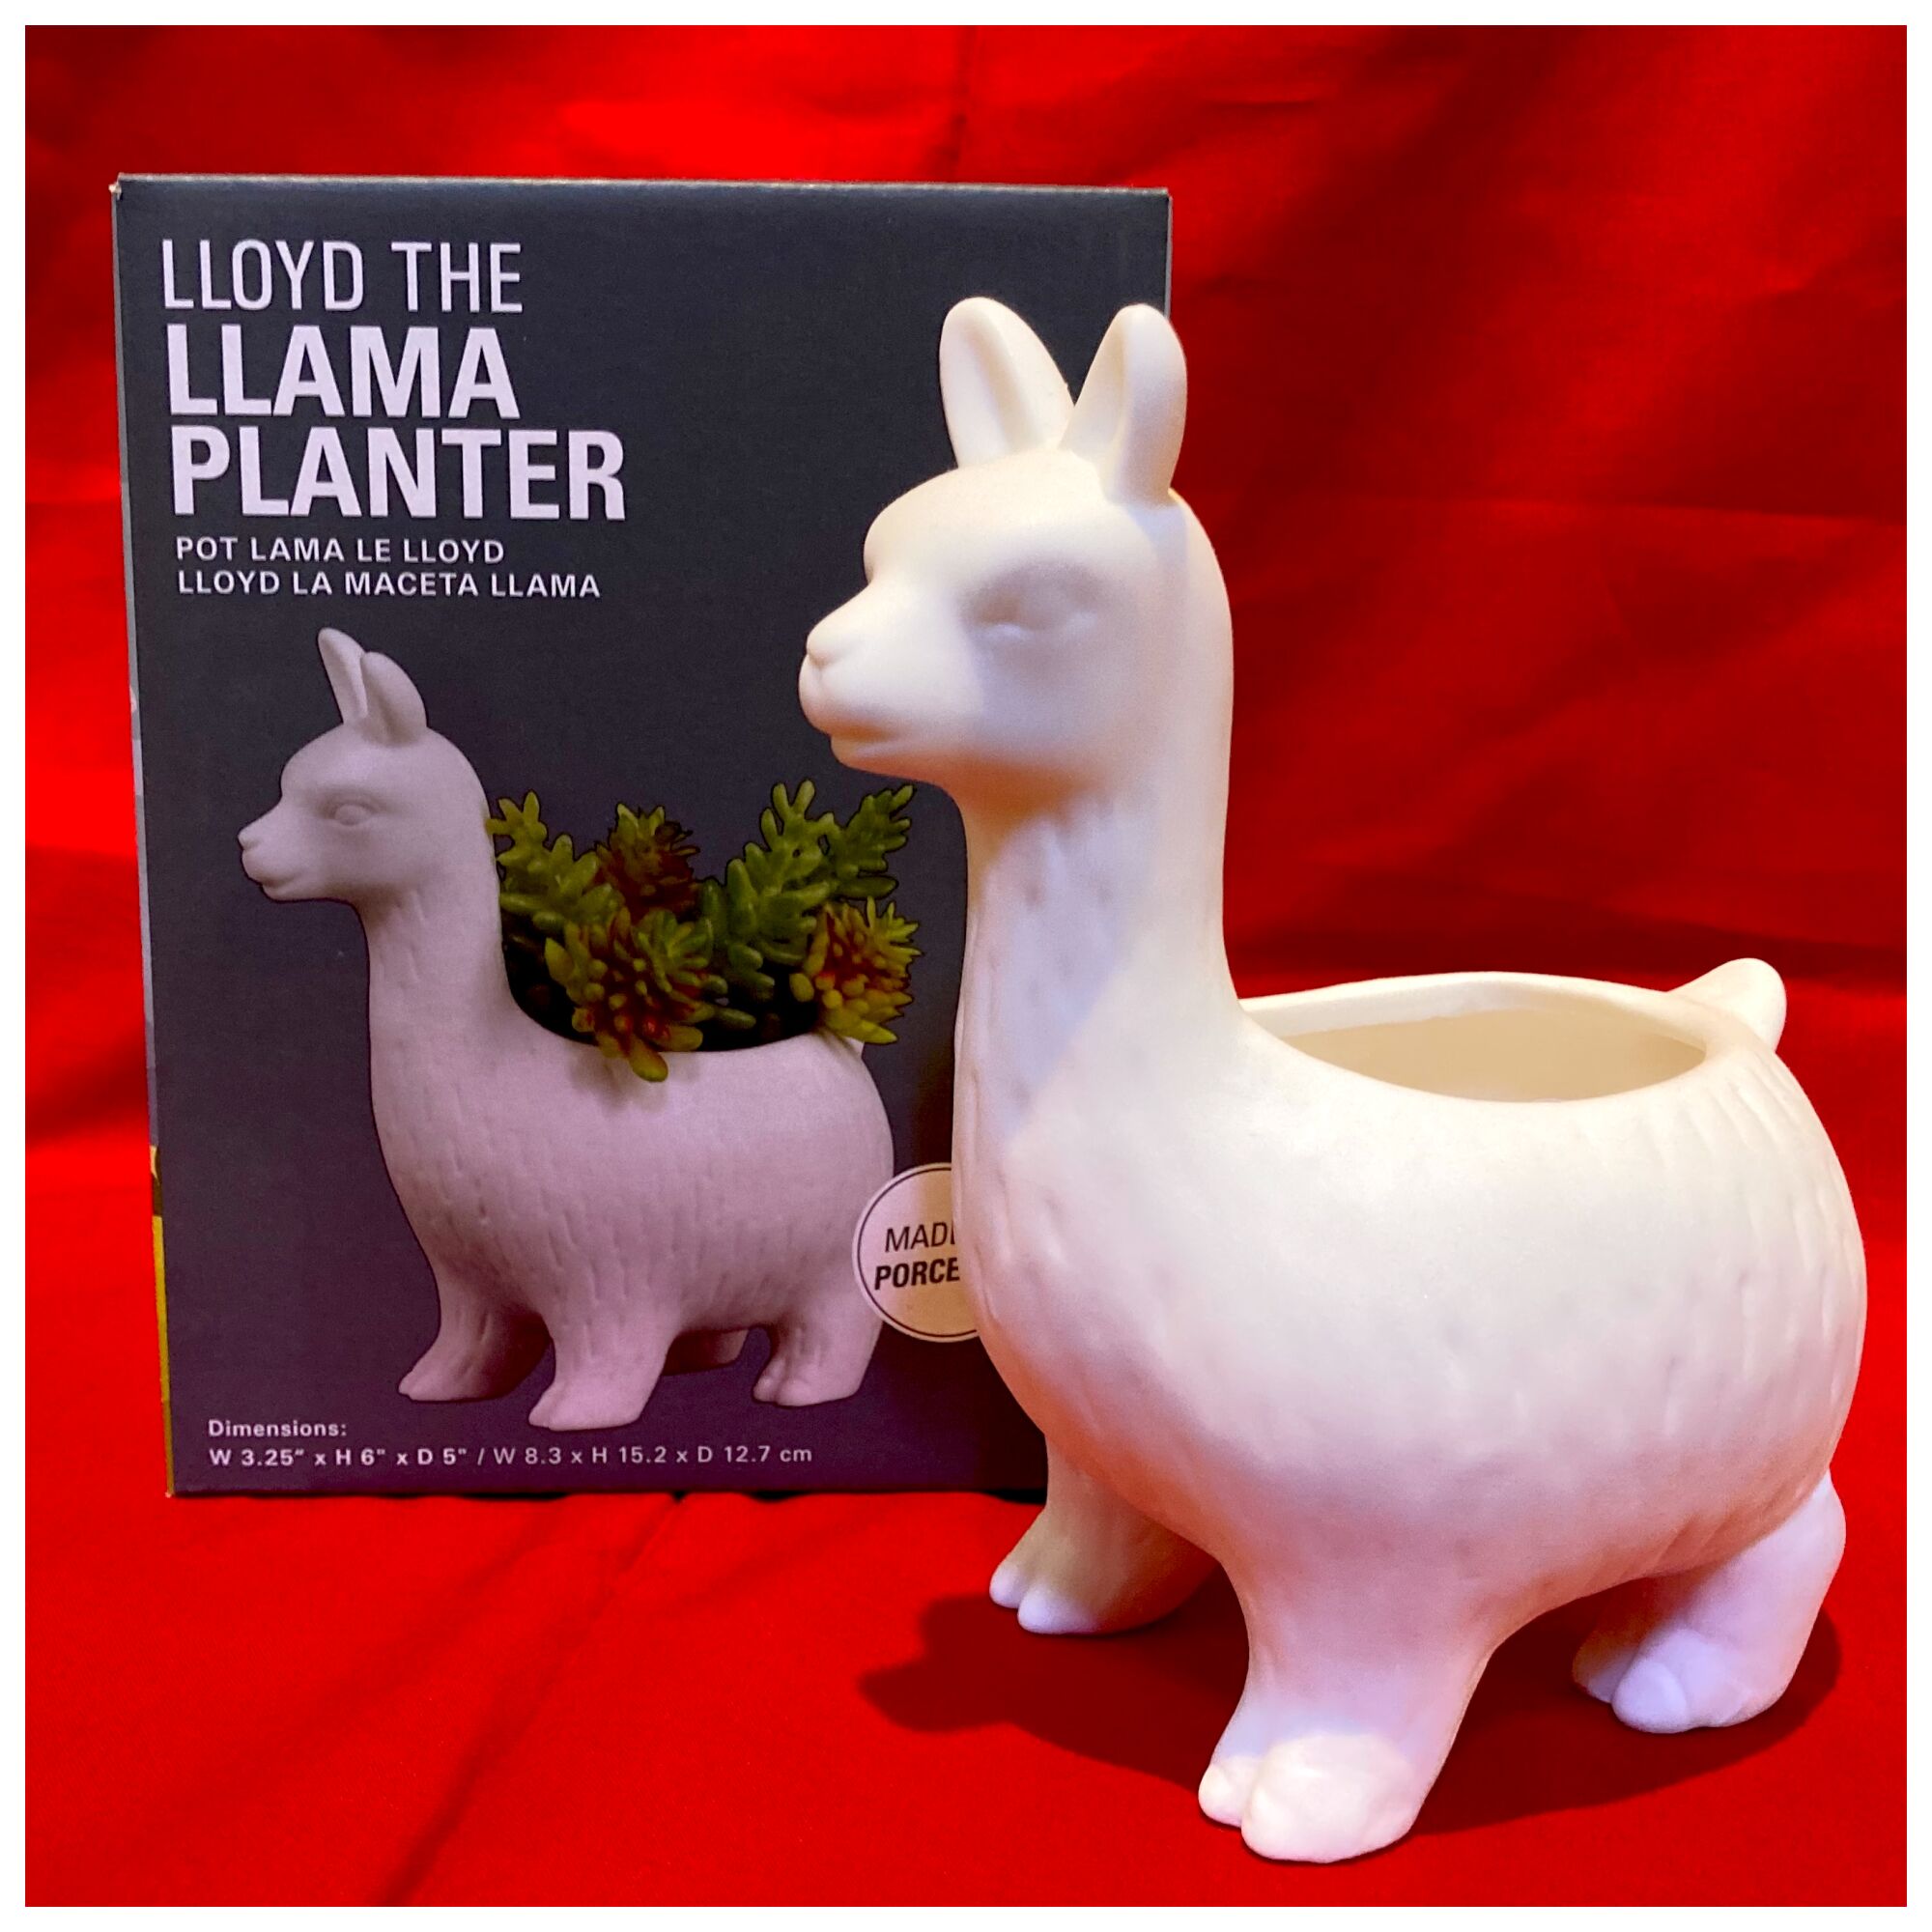 A llama planter from Wacko